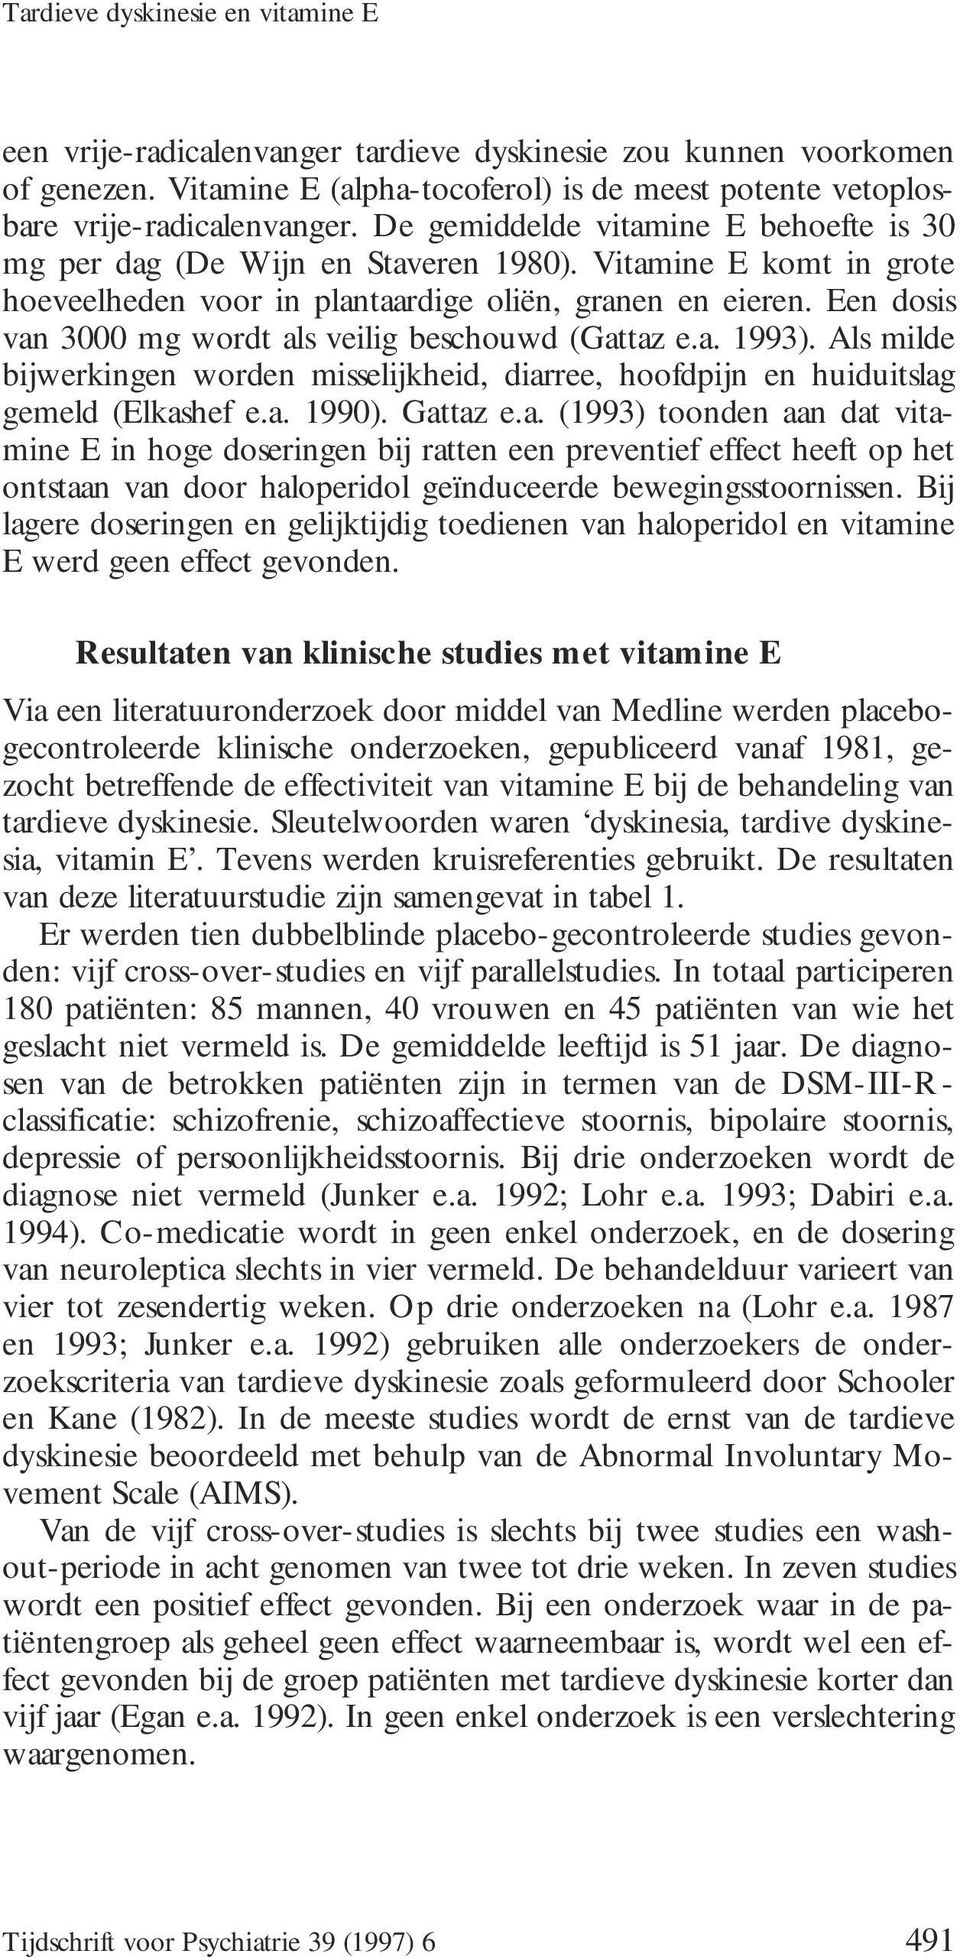 Een dosis van 3000 mg wordt als veilig beschouwd (Gattaz e.a. 1993). Als milde bijwerkingen worden misselijkheid, diarree, hoofdpijn en huiduitslag gemeld (Elkashef e.a. 1990). Gattaz e.a. (1993) toonden aan dat vitamine E in hoge doseringen bij ratten een preventief effect heeft op het ontstaan van door haloperidol geïnduceerde bewegingsstoornissen.